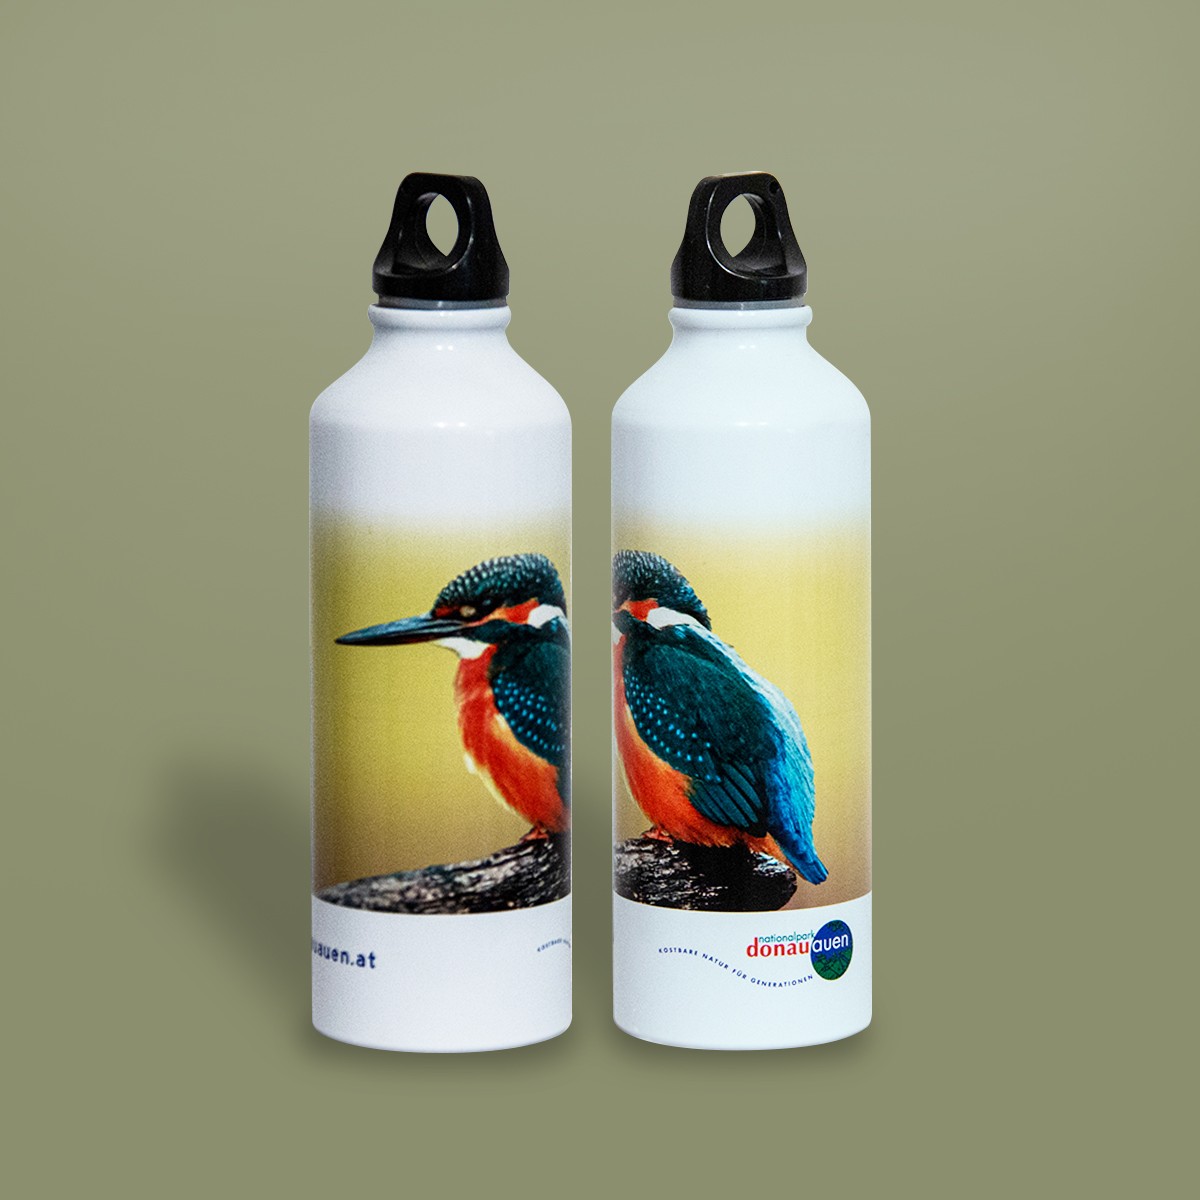 Nationalpark-Donau-Auen-Trinkflasche-Eisvogel.jpg